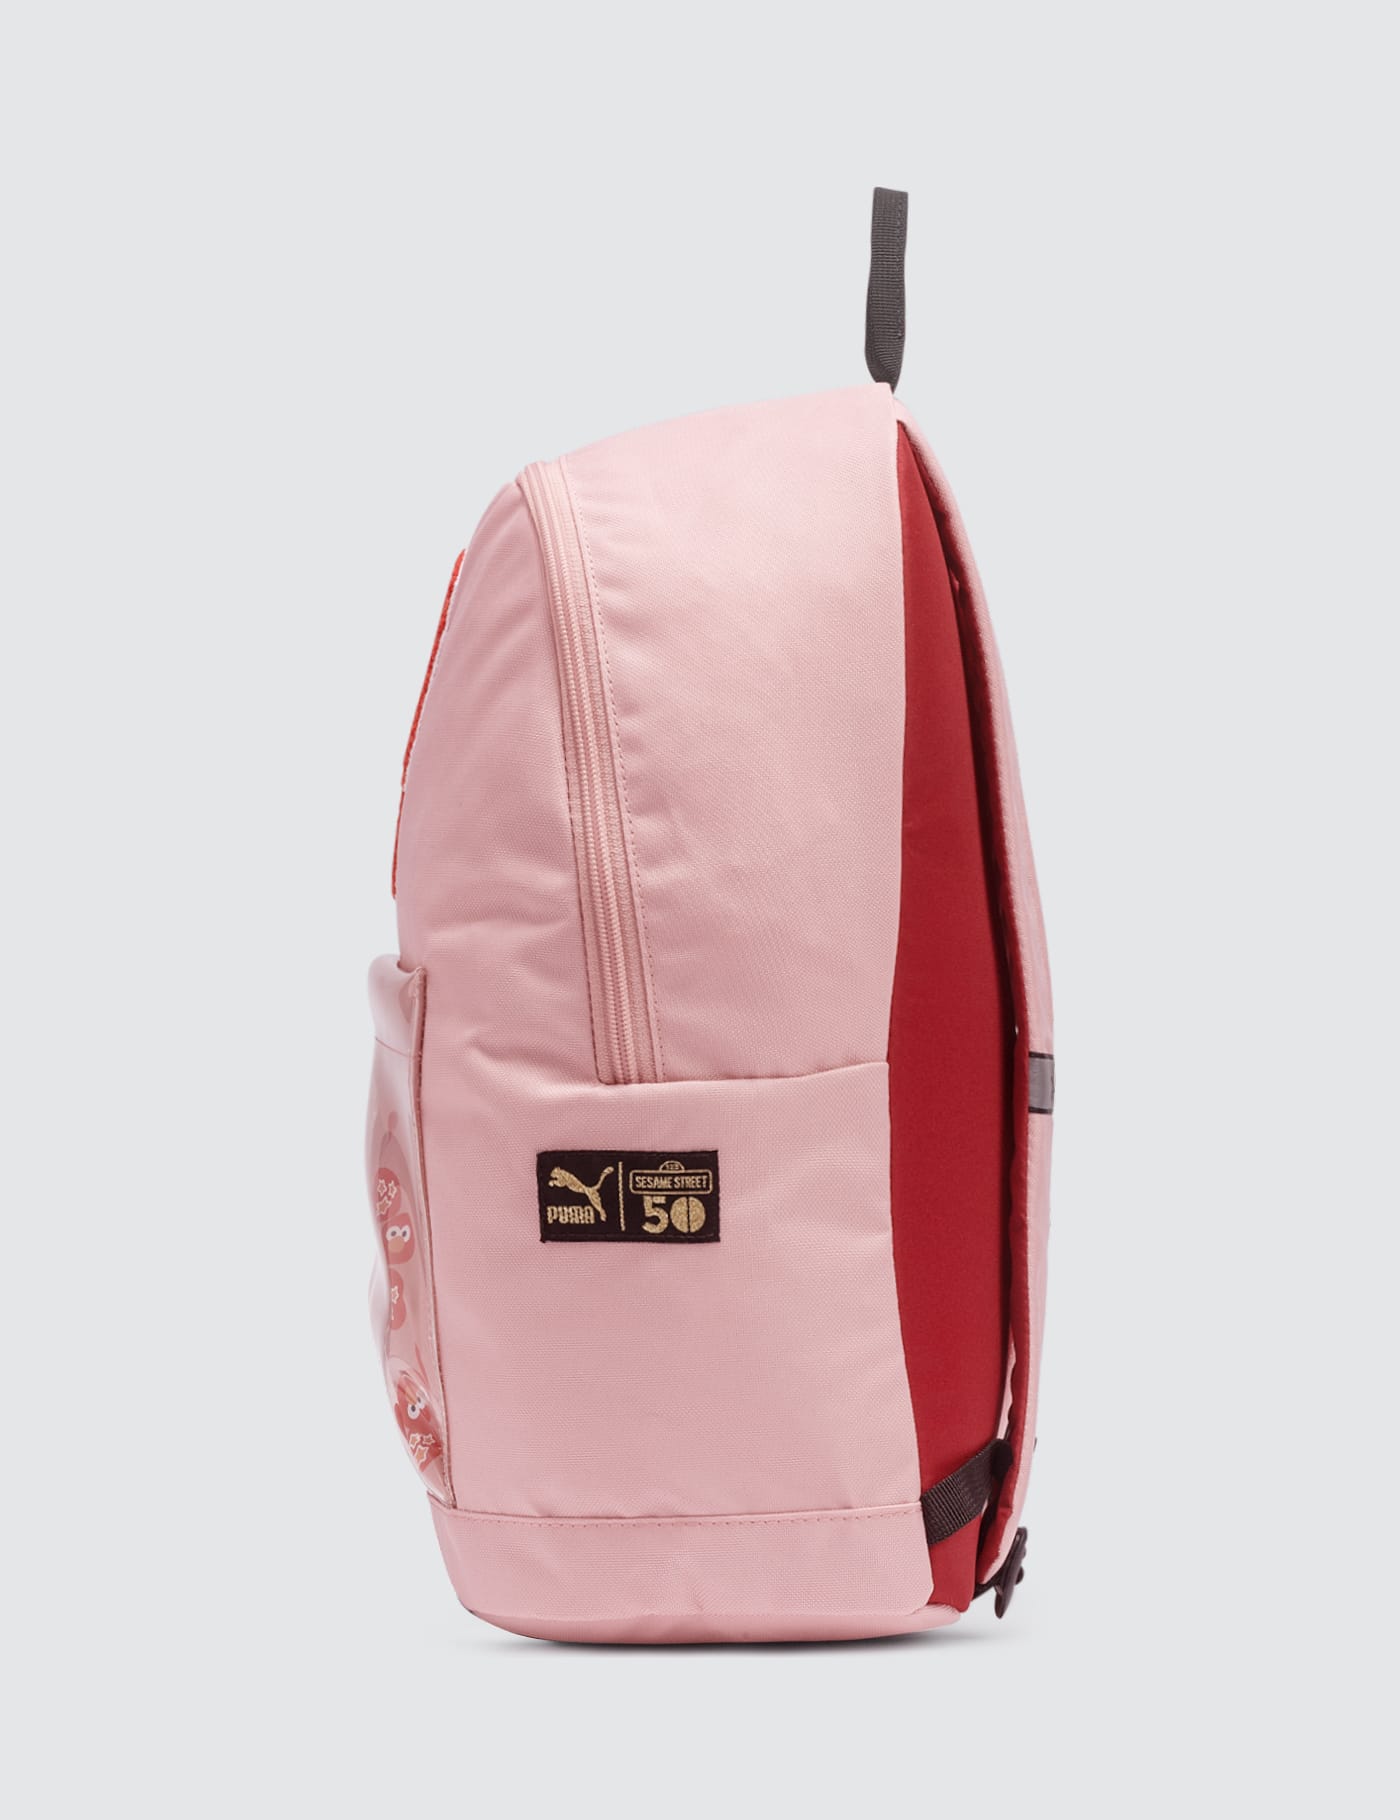 sesame street backpack puma